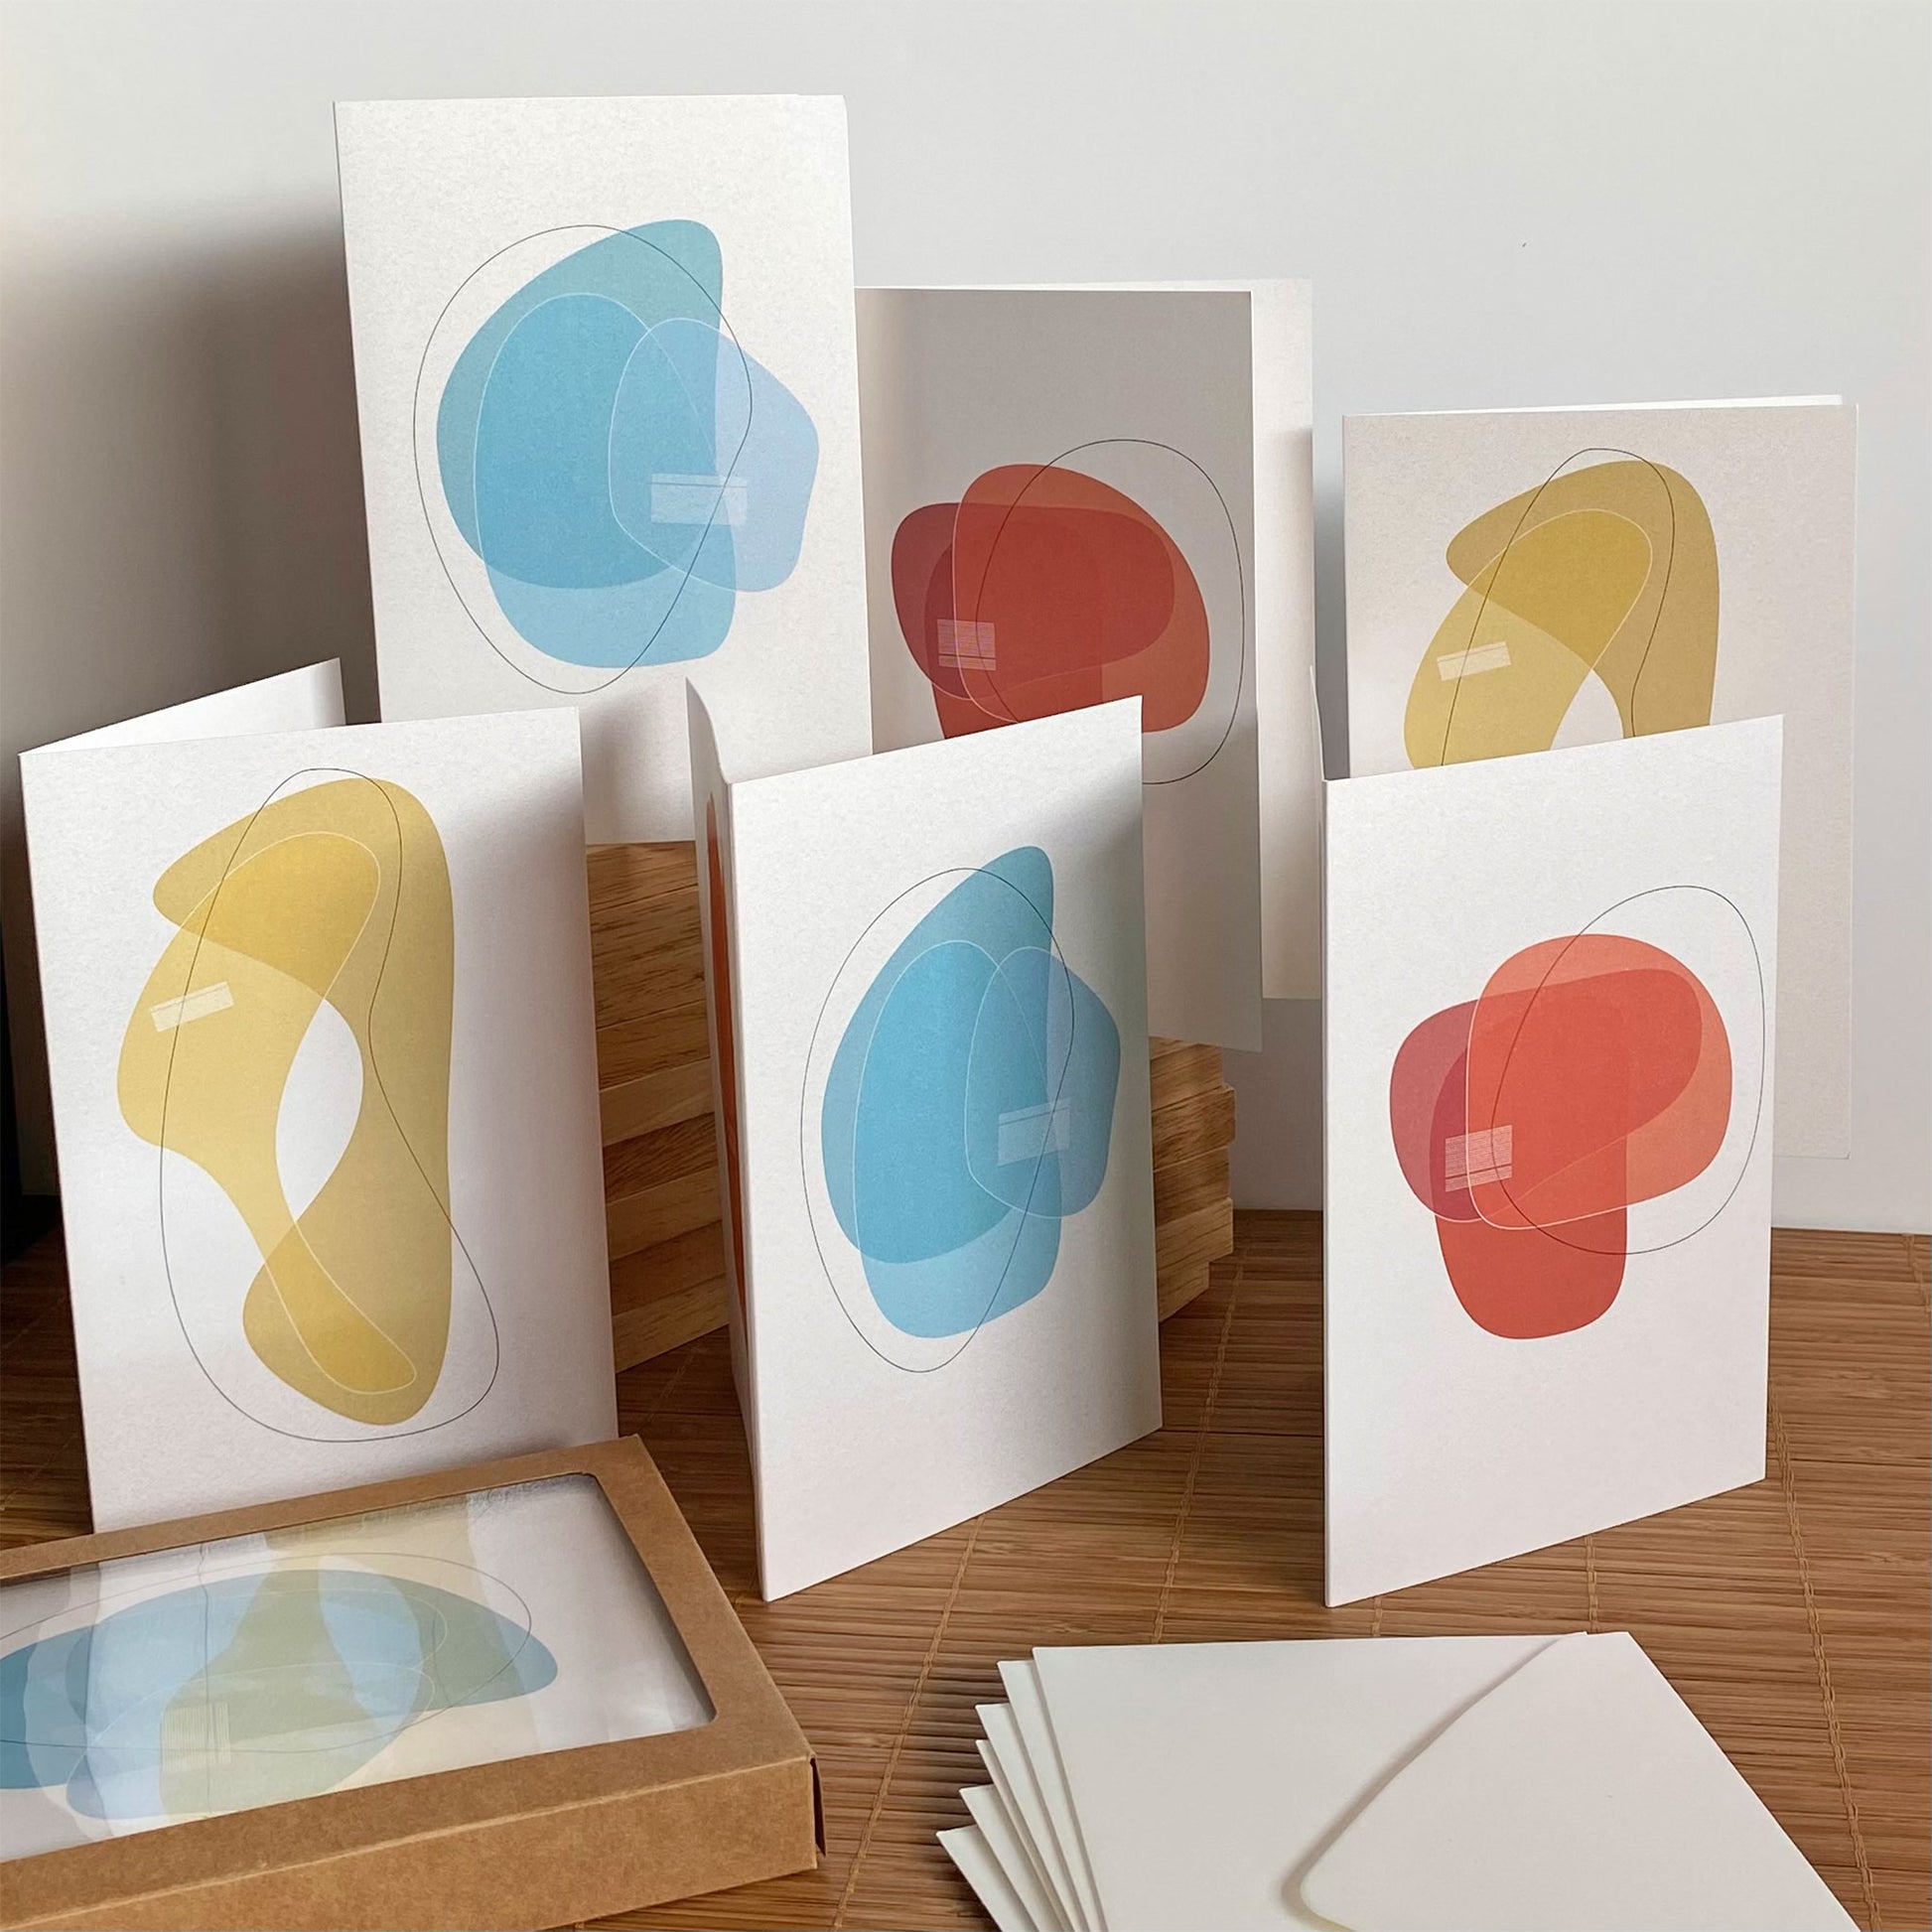 Productafbeelding, foto wenskaarten set 'wensen in vorm' 6 stuks, een presentatie van alle kaarten met de enveloppen en het verpakkingsdoosje